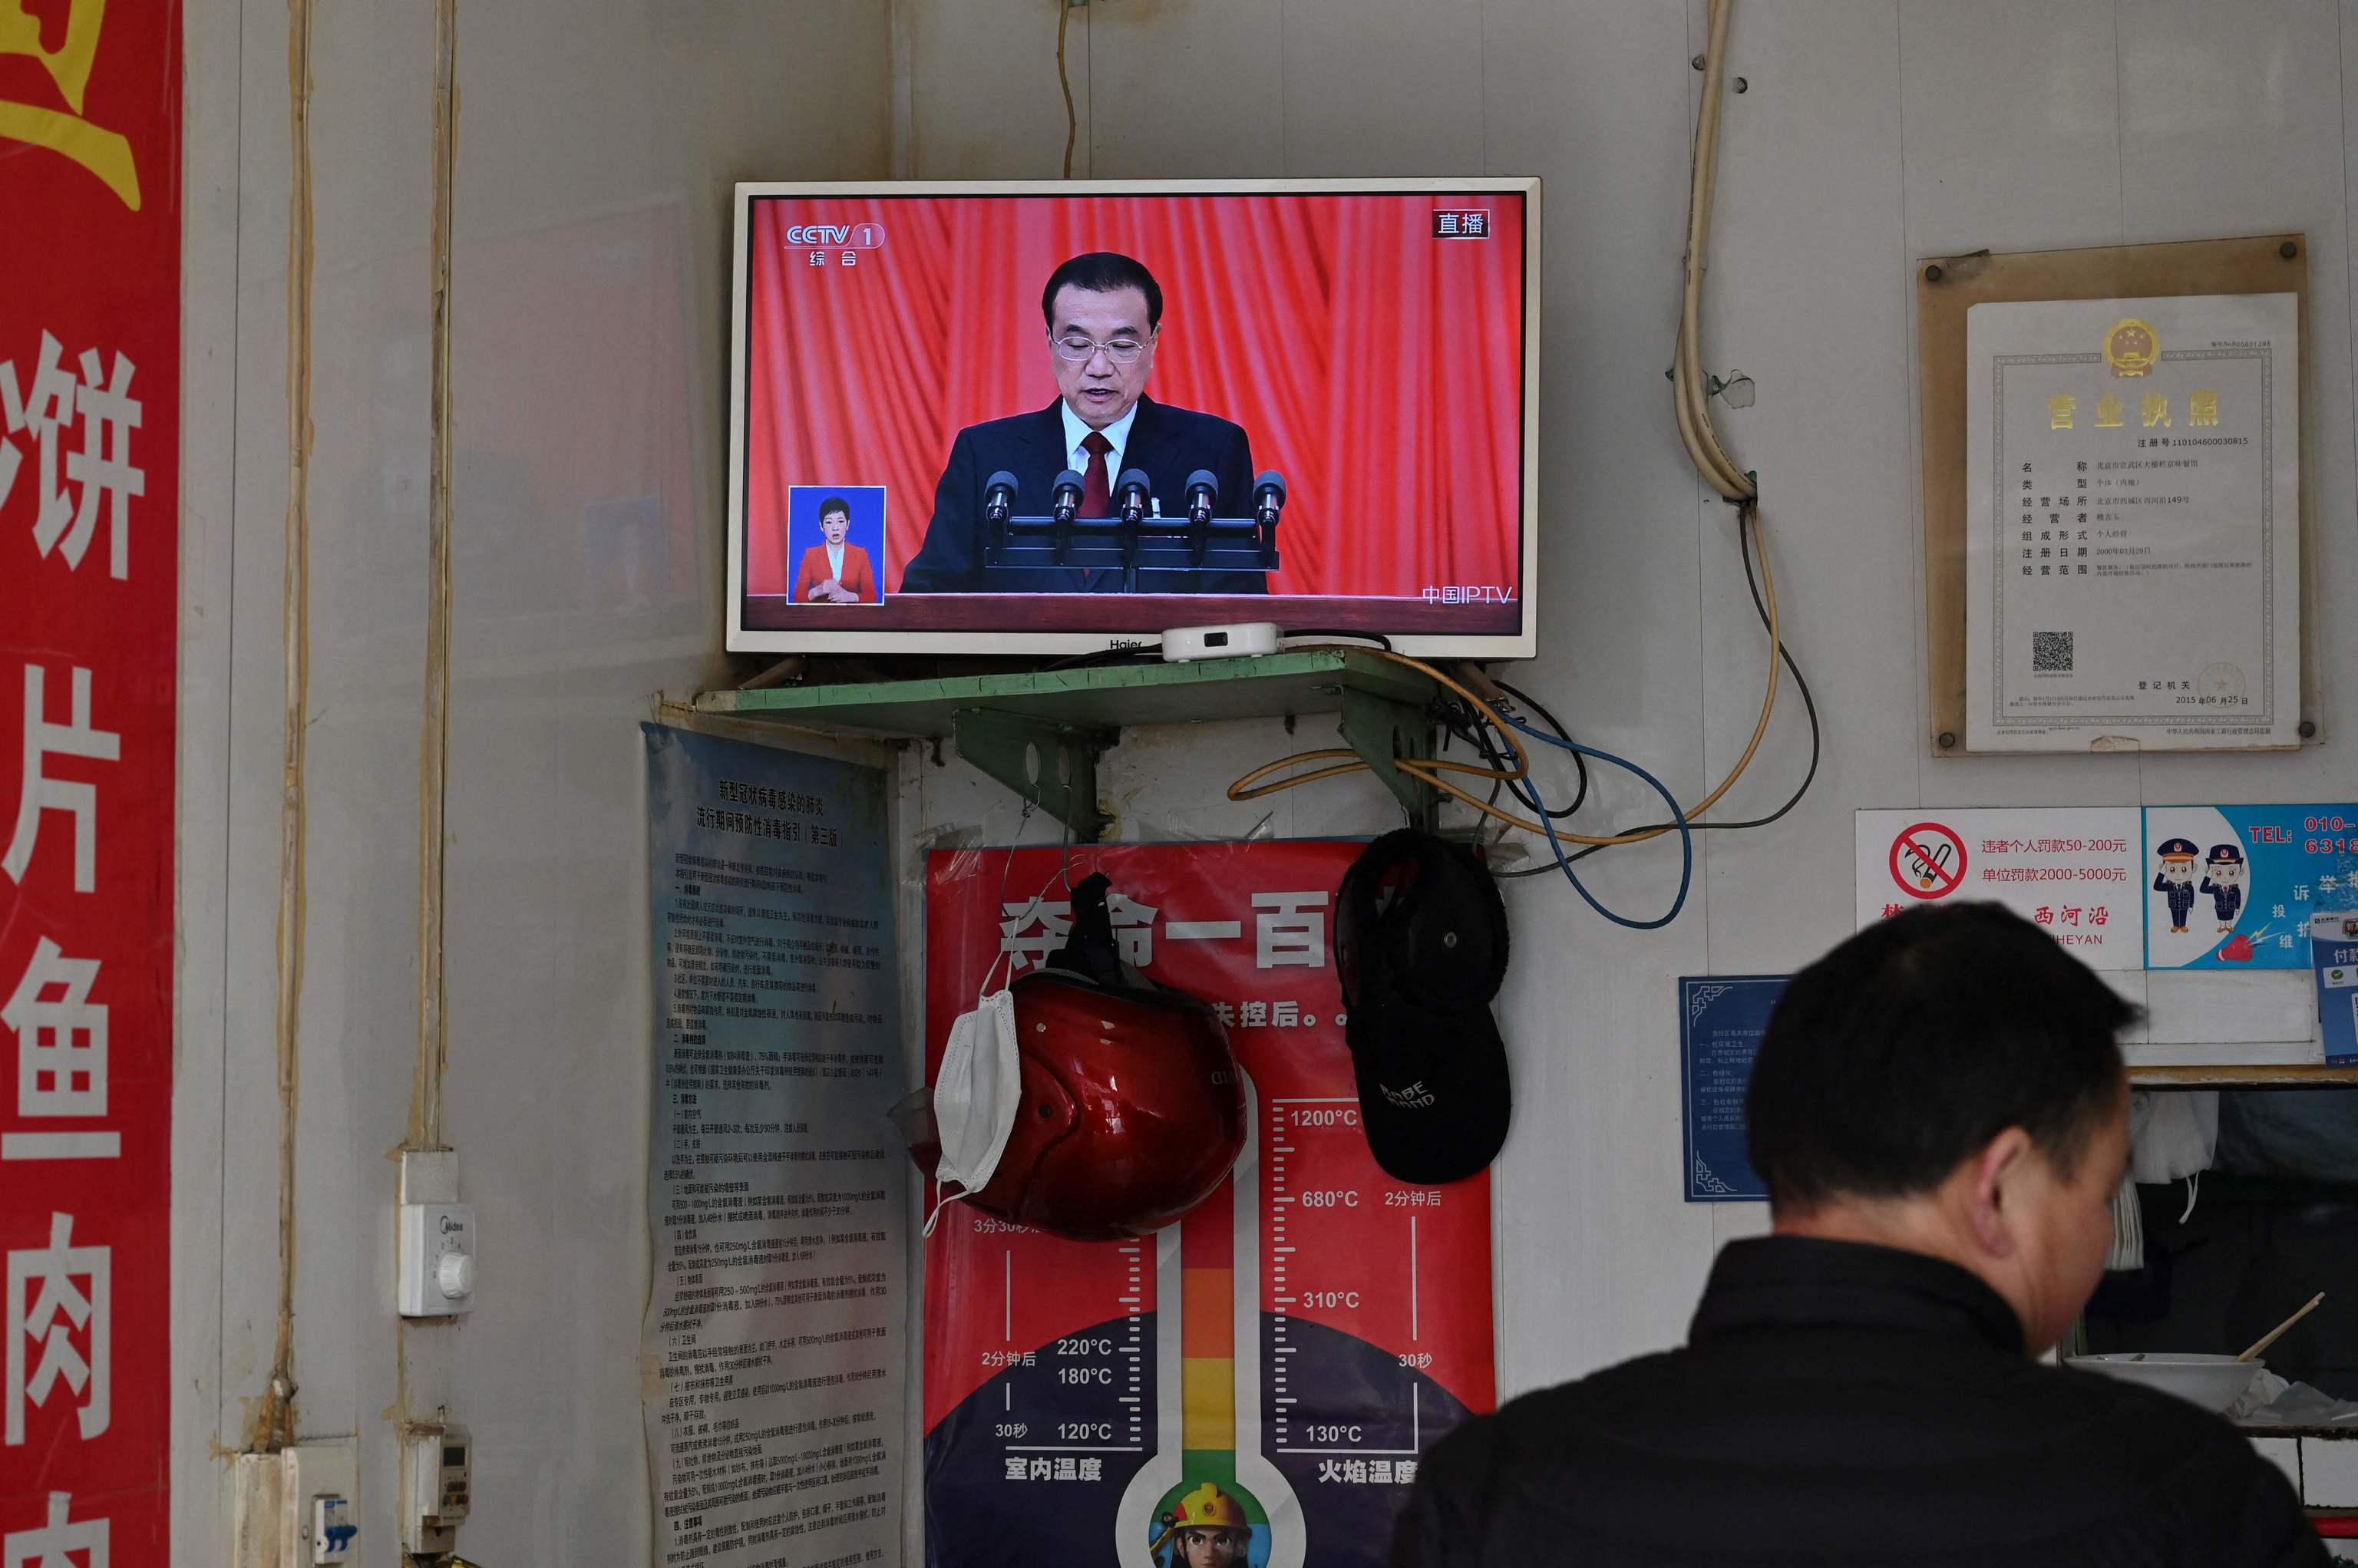 Una pantalla de televisin en un restaurante muestra la cobertura en directo del primer ministro chino Li Keqiang leyendo su informe de trabajo durante la sesin de apertura de la Asamblea Popular Nacional en Pekn el 5 de marzo de 2023.